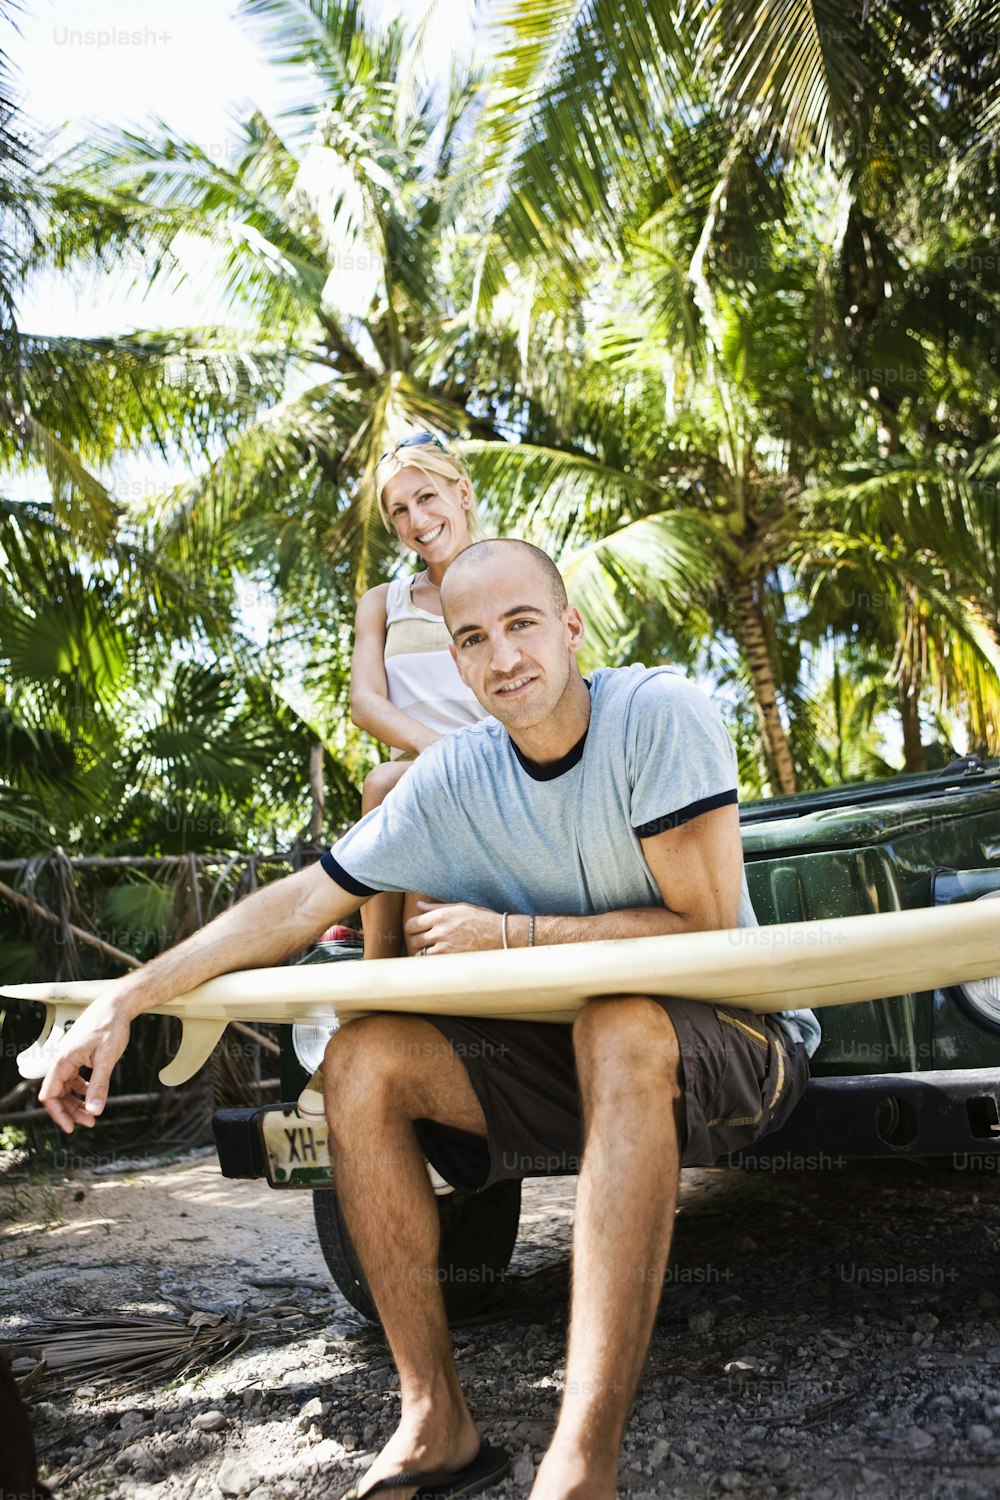 Un uomo che tiene una tavola da surf accanto a una donna